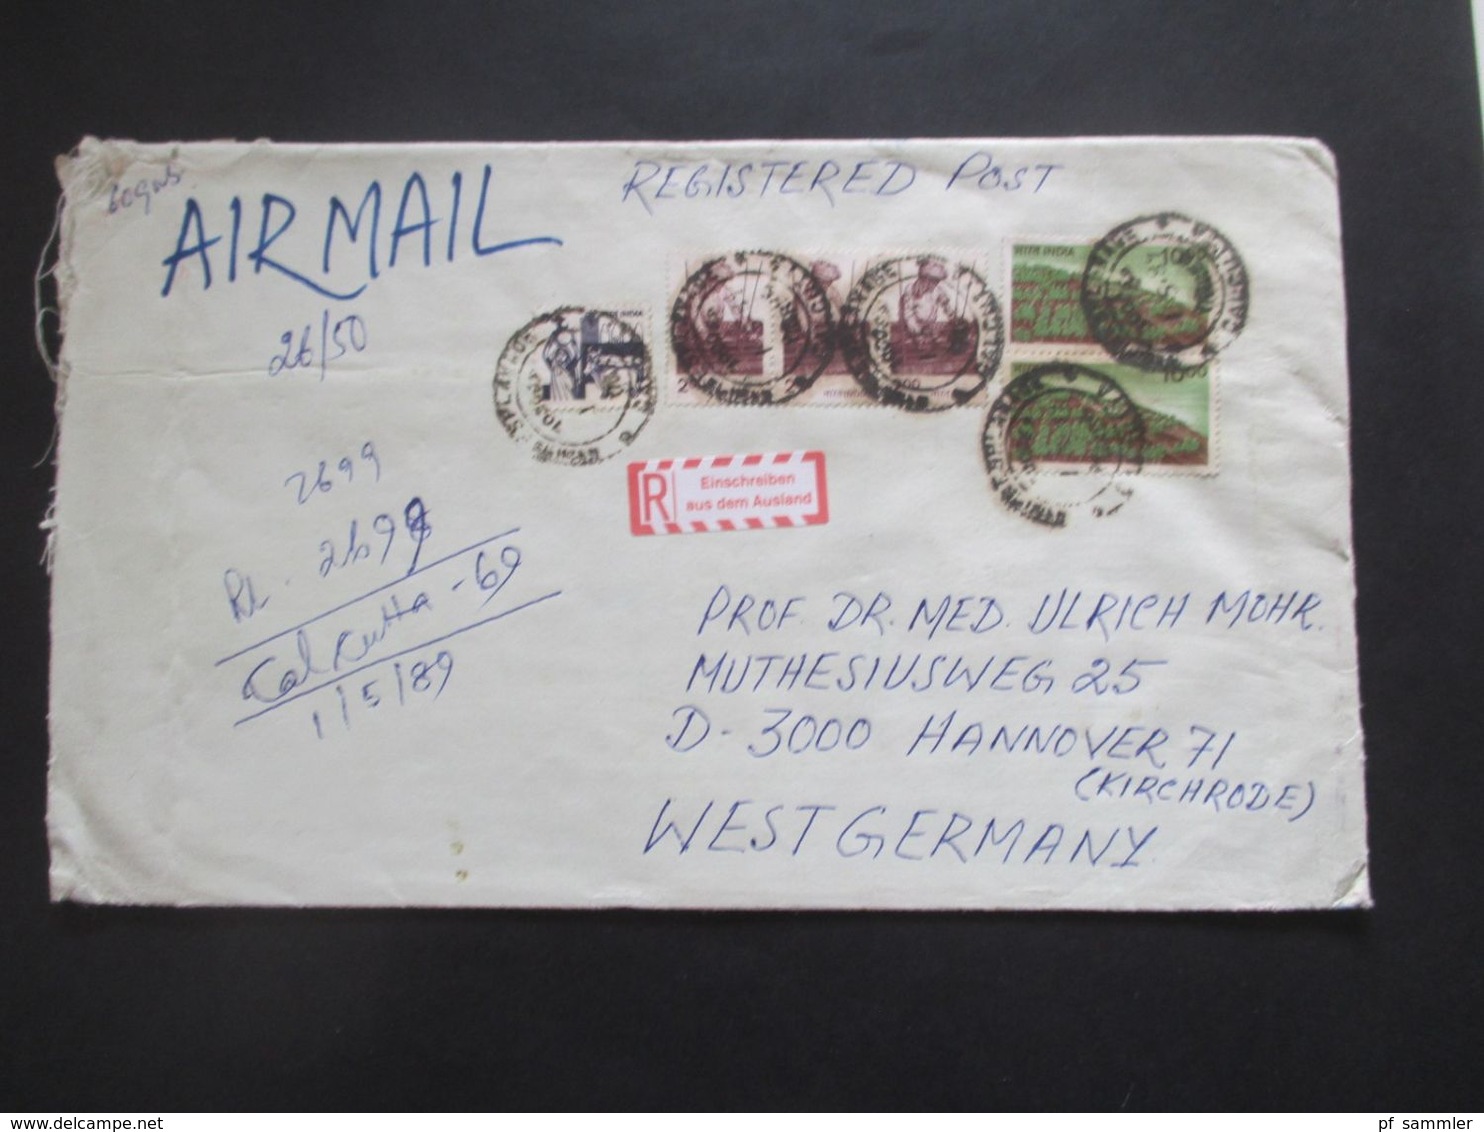 Indien um 1989 Aufkleber Einschreiben aus dem Ausland By Air Mail / Luftpost alle nach Hannover gelaufen!